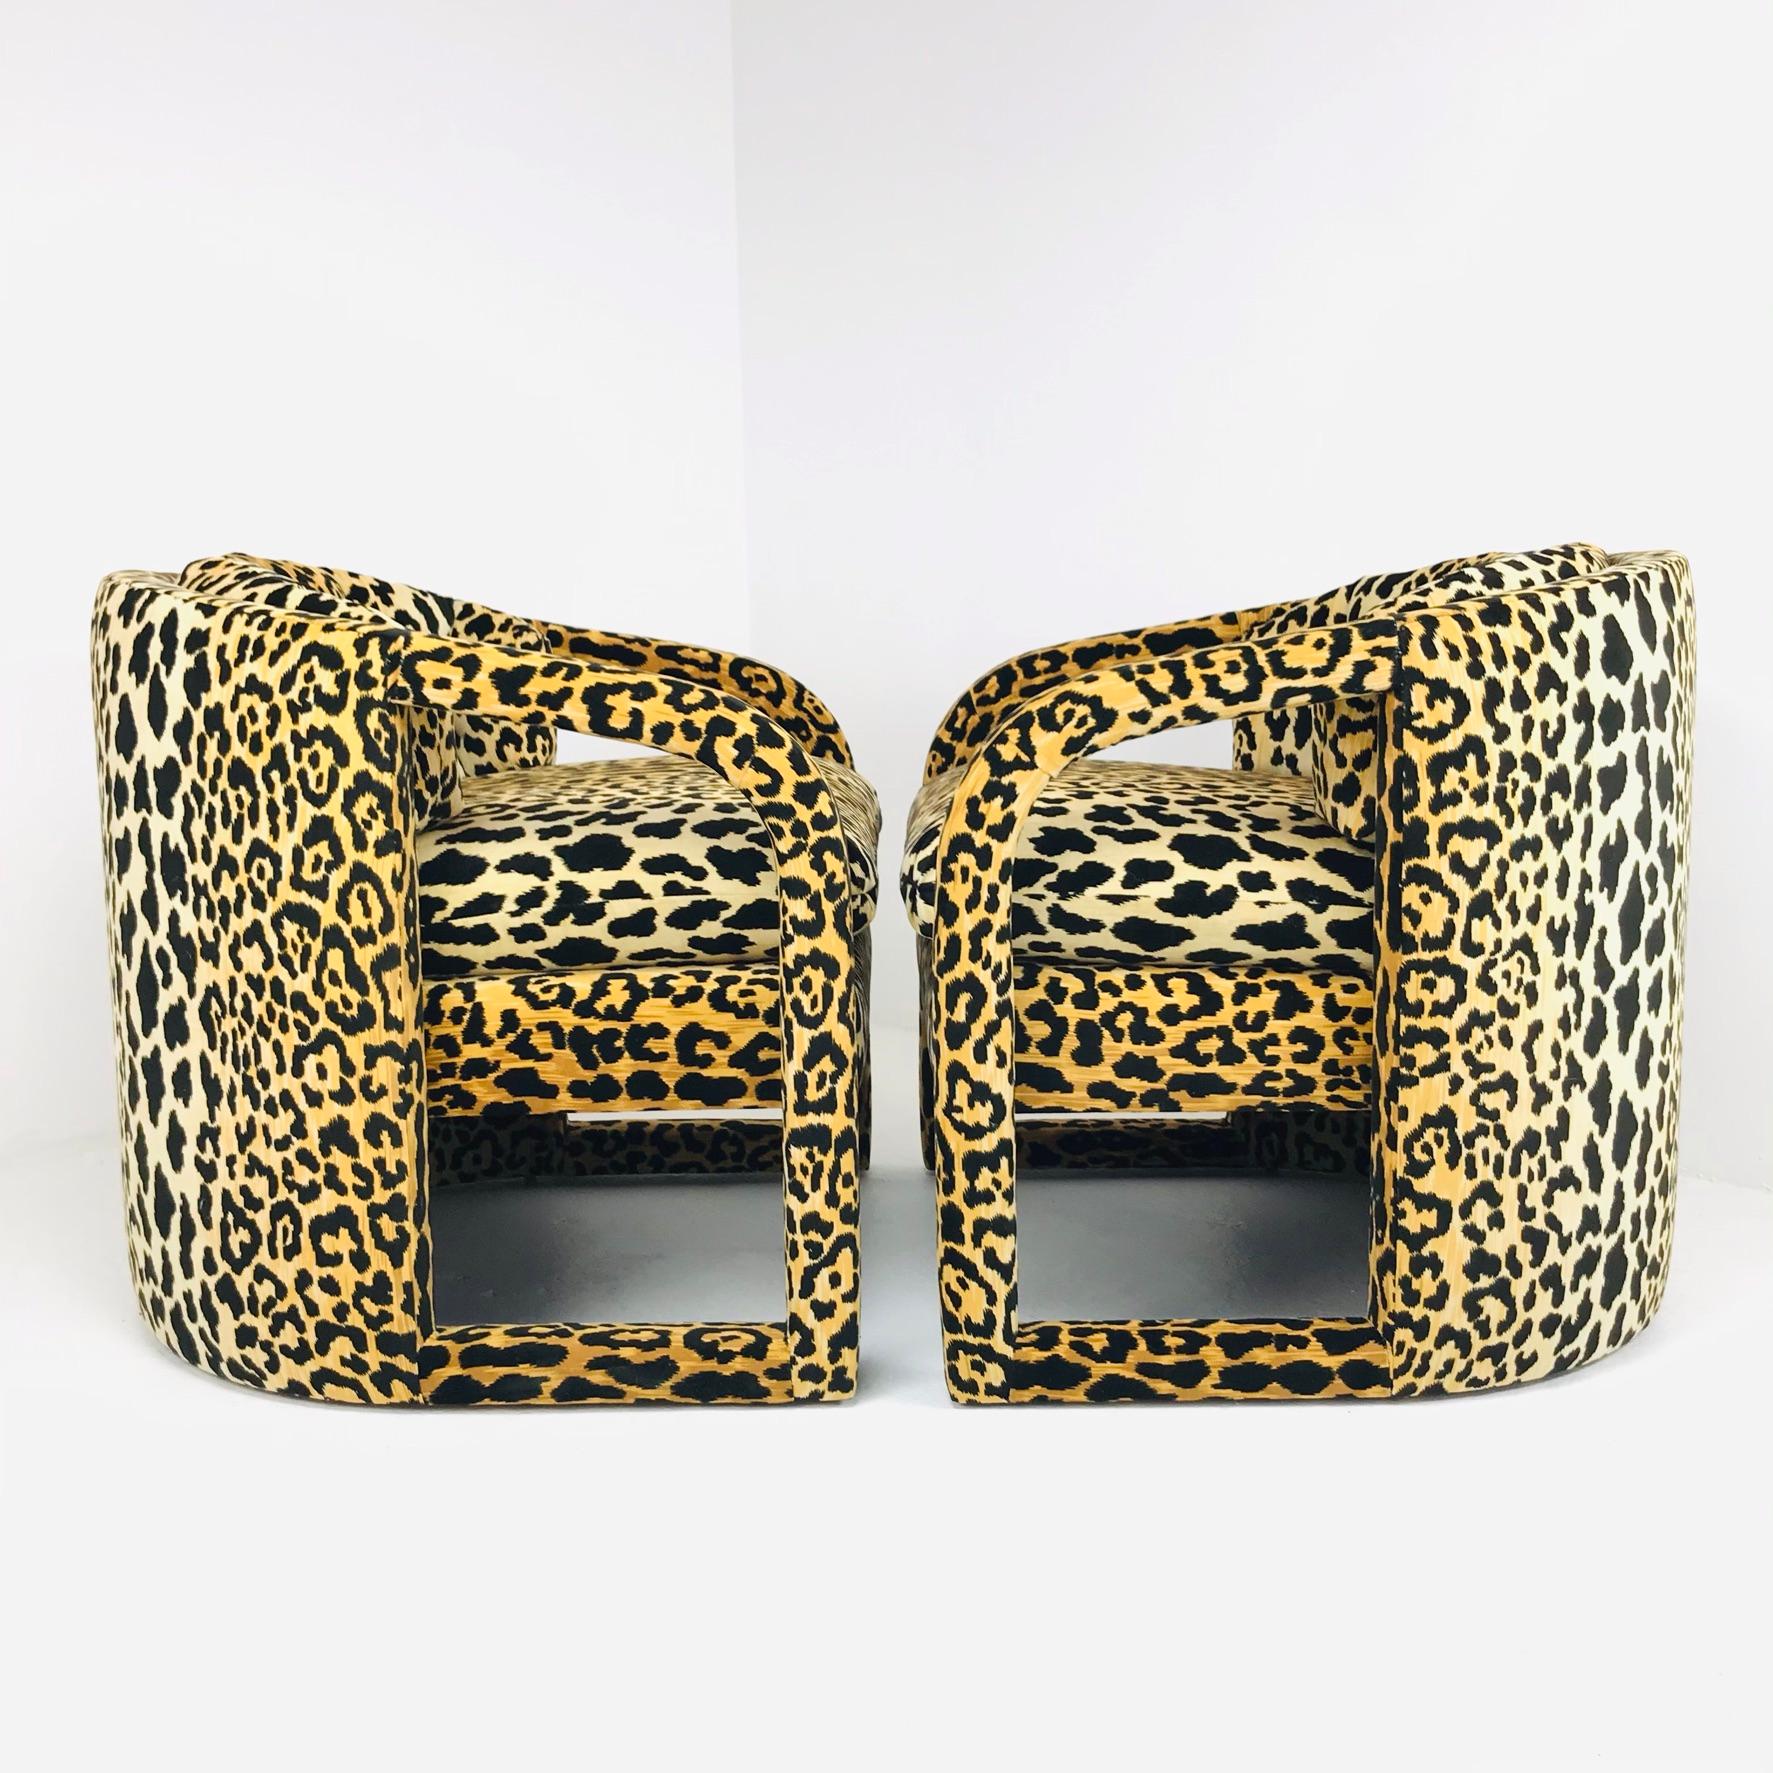 Wunderschönes Paar Sessel mit ausgeschnittener Rückenlehne und maßgeschneidertem Leopardensamt. Wird auf Bestellung gefertigt und kann nach Ihren Vorgaben geändert werden. Erhältlich für $5800 (wie abgebildet), oder in einem Stoff nach Wahl für